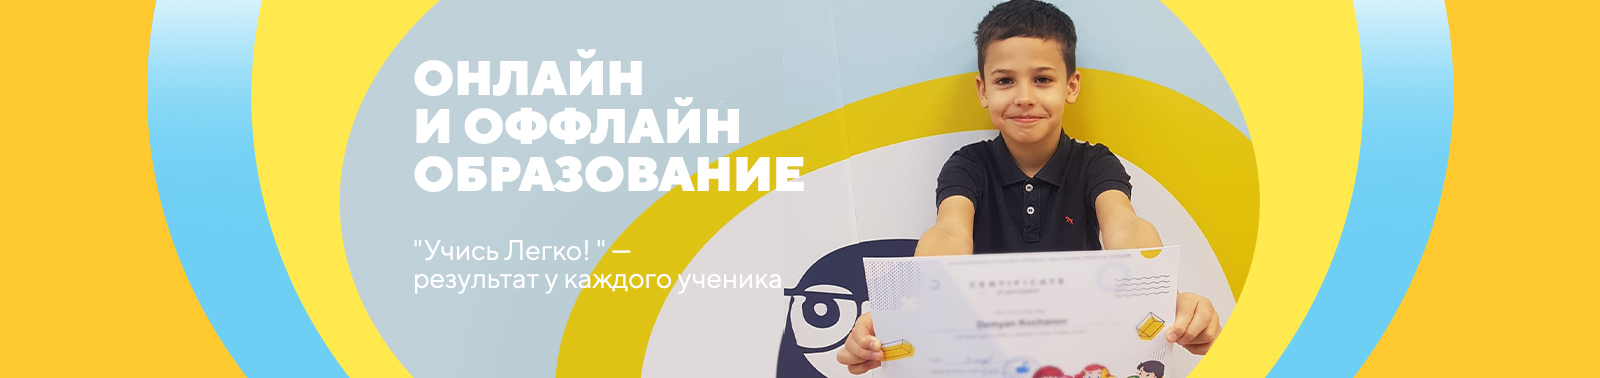 uchimlegko.ru - Школа иностранных языков